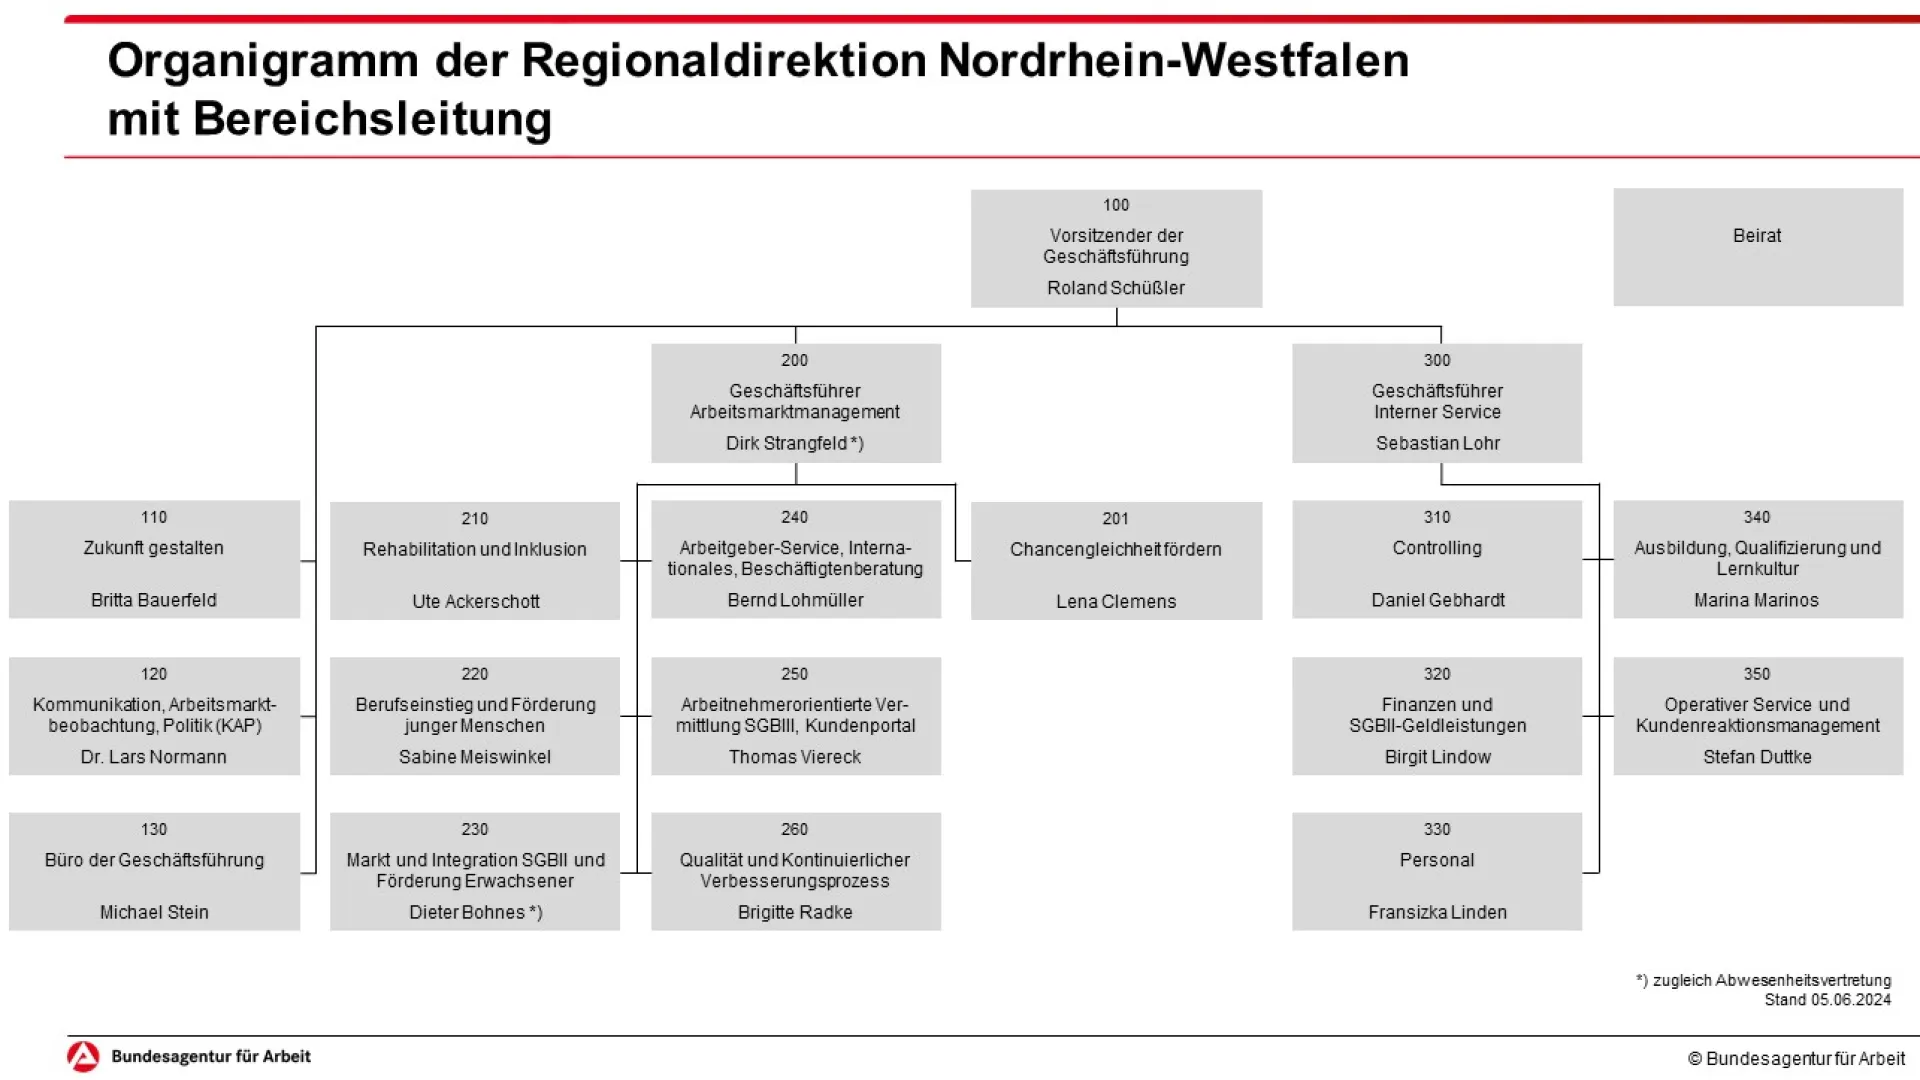 Auf dem Bild ist das Organigramm der Regionaldirektion Nordrhein-Westfalen grafisch abgebildet. Die Inhalte können Sie dem unten stehenden Text auf dieser Internetseite entnehmen.